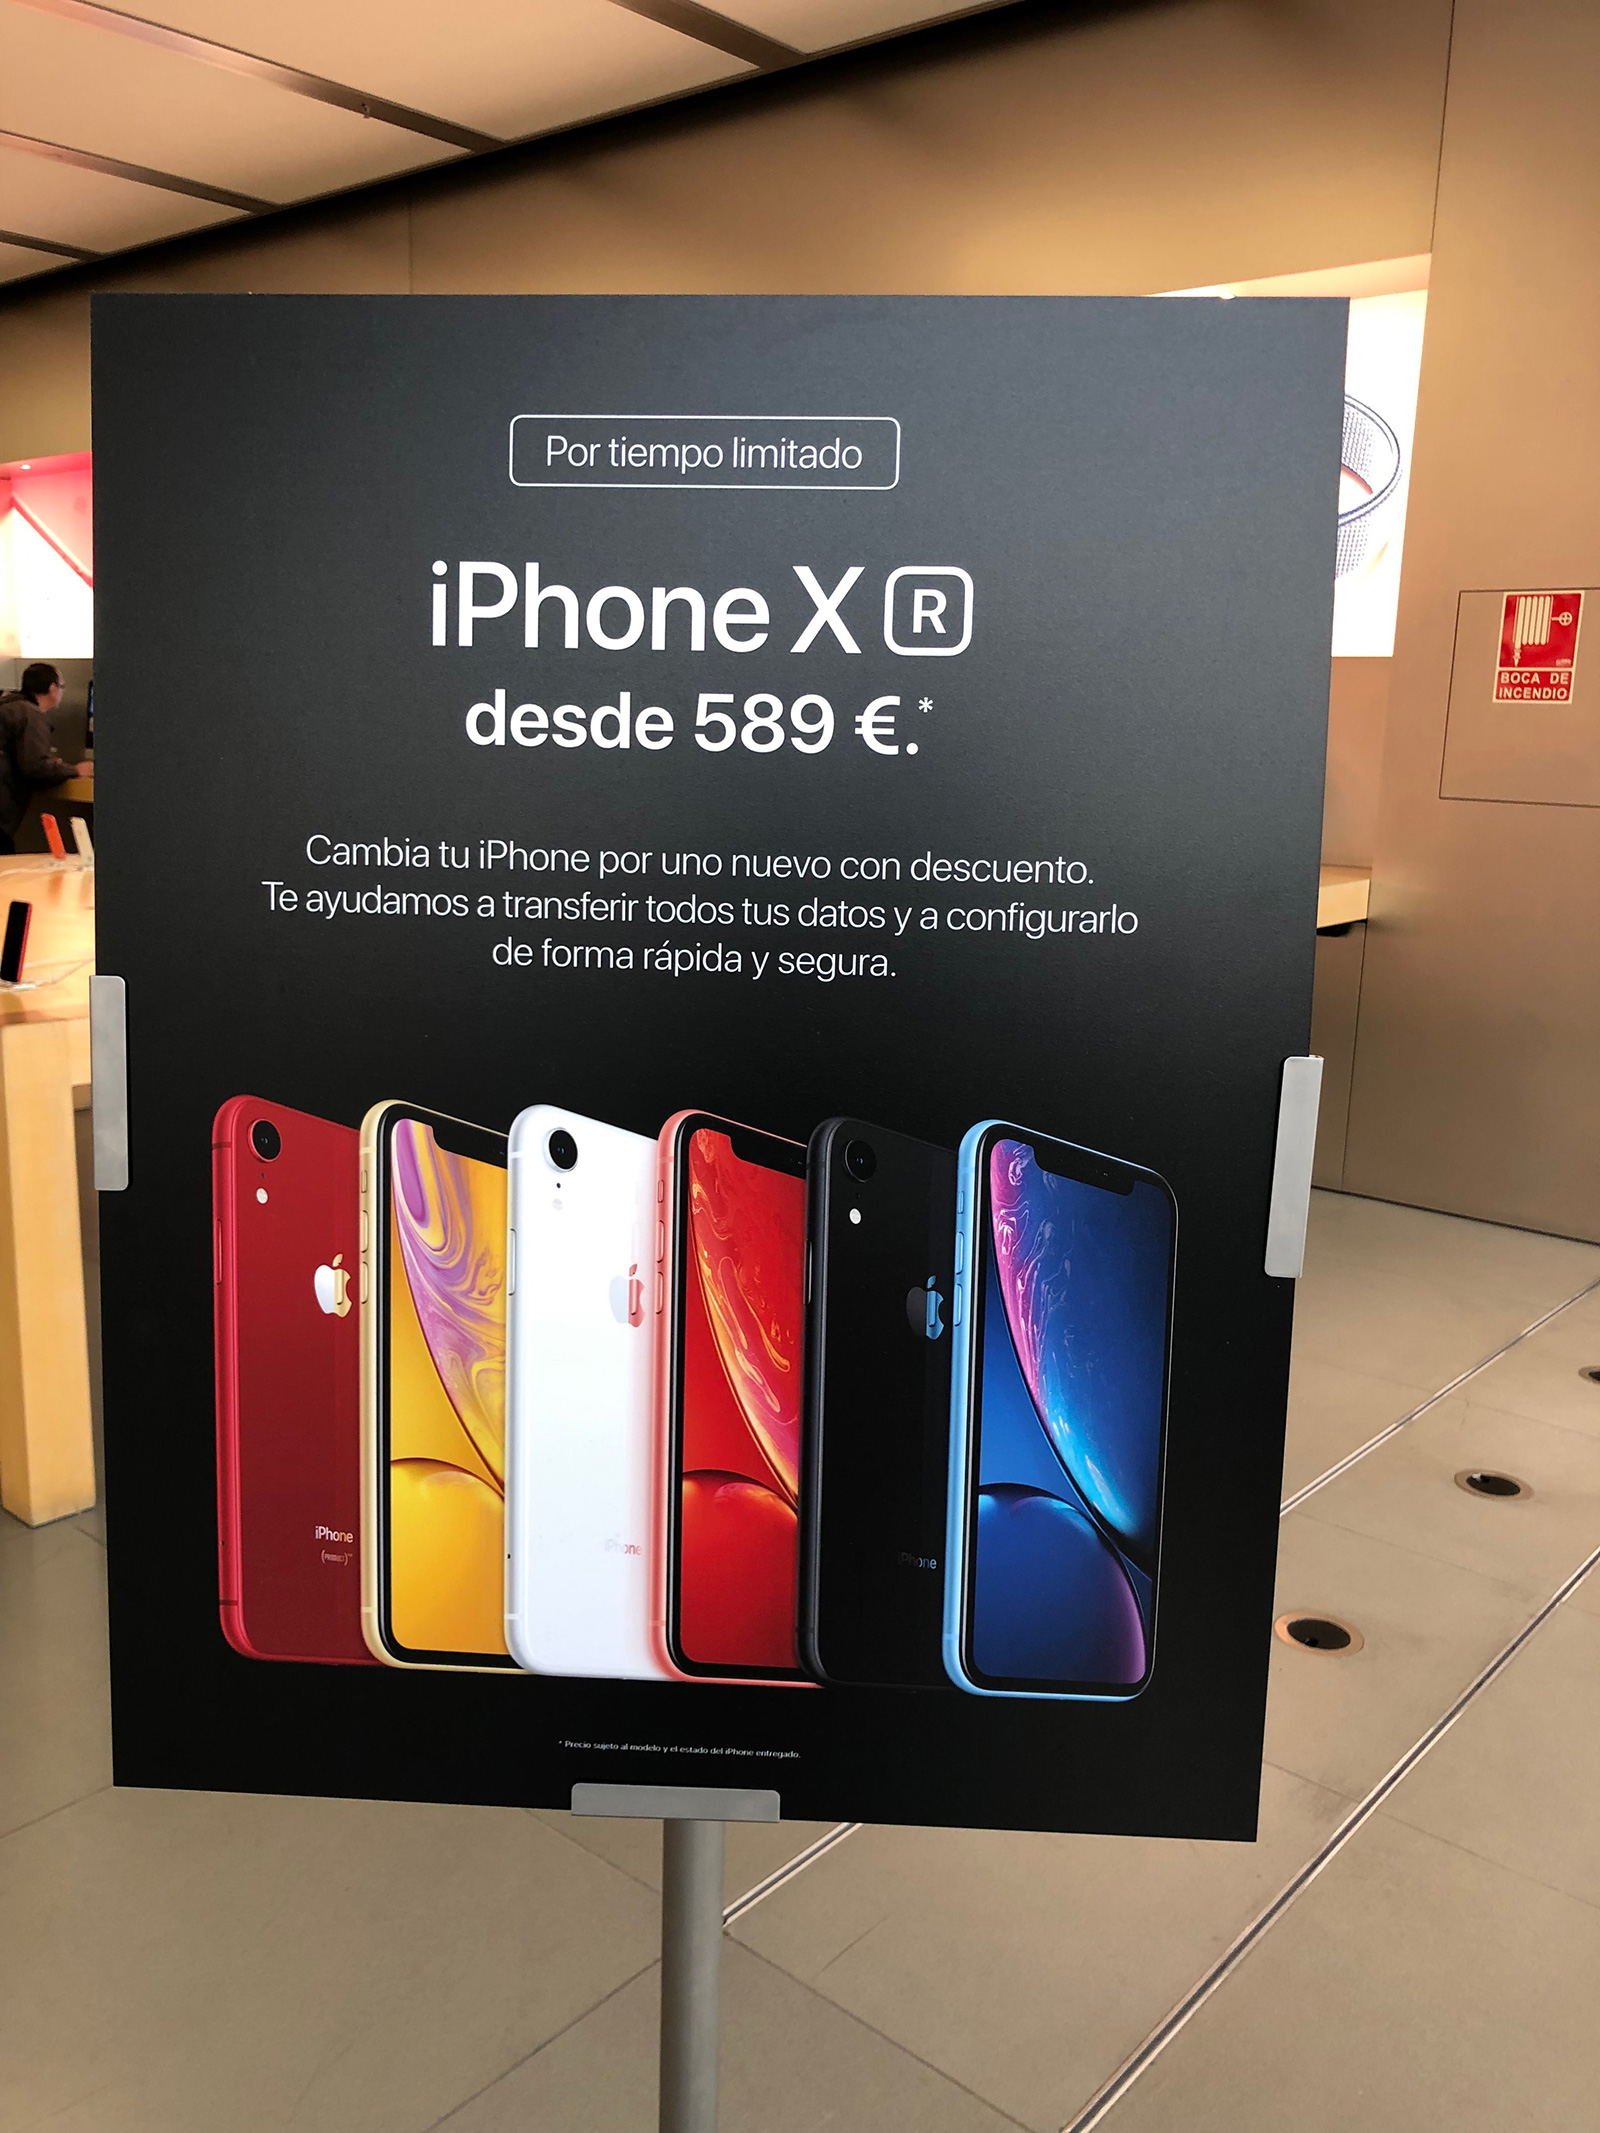 iPhone XR promocionado en una Apple Store con un descuento entregando un iPhone antiguo